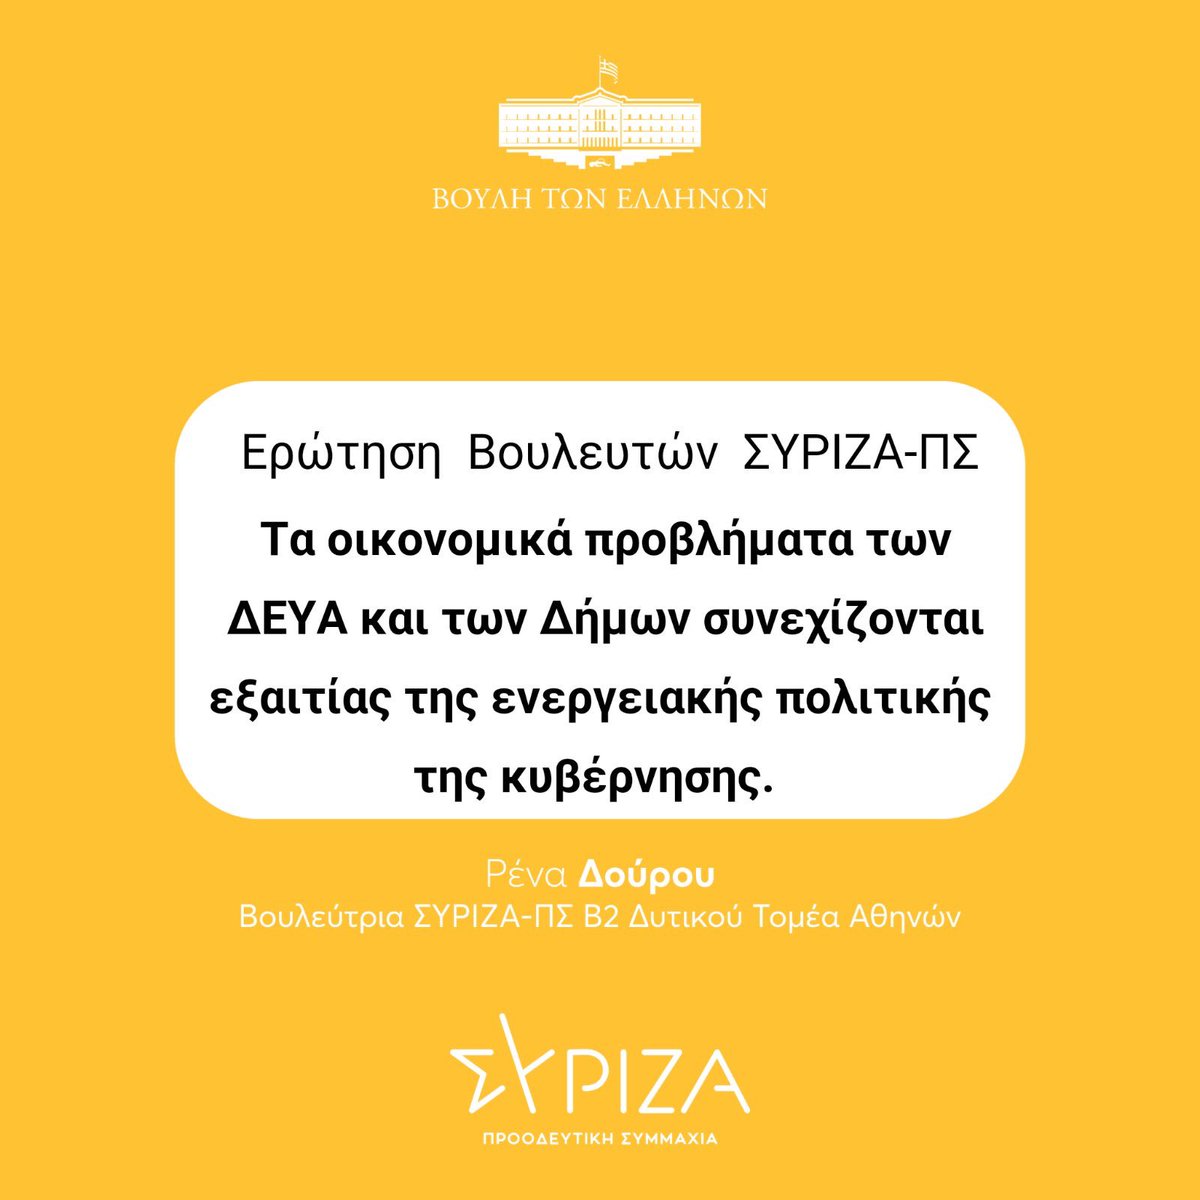 Ερώτηση Βουλευτών του @syriza_gr - Προοδευτική Συμμαχία, με πρωτοβουλία του @SymeonKed , την οποία συνυπογράφω:
“Τα οικονομικά προβλήματα των ΔΕΥΑ και των Δήμων συνεχίζονται εξαιτίας της ενεργειακής πολιτικής της κυβέρνησης”

Επαναφέρει το πρόβλημα πολλών ΔΕΥΑ και δήμων καθώς